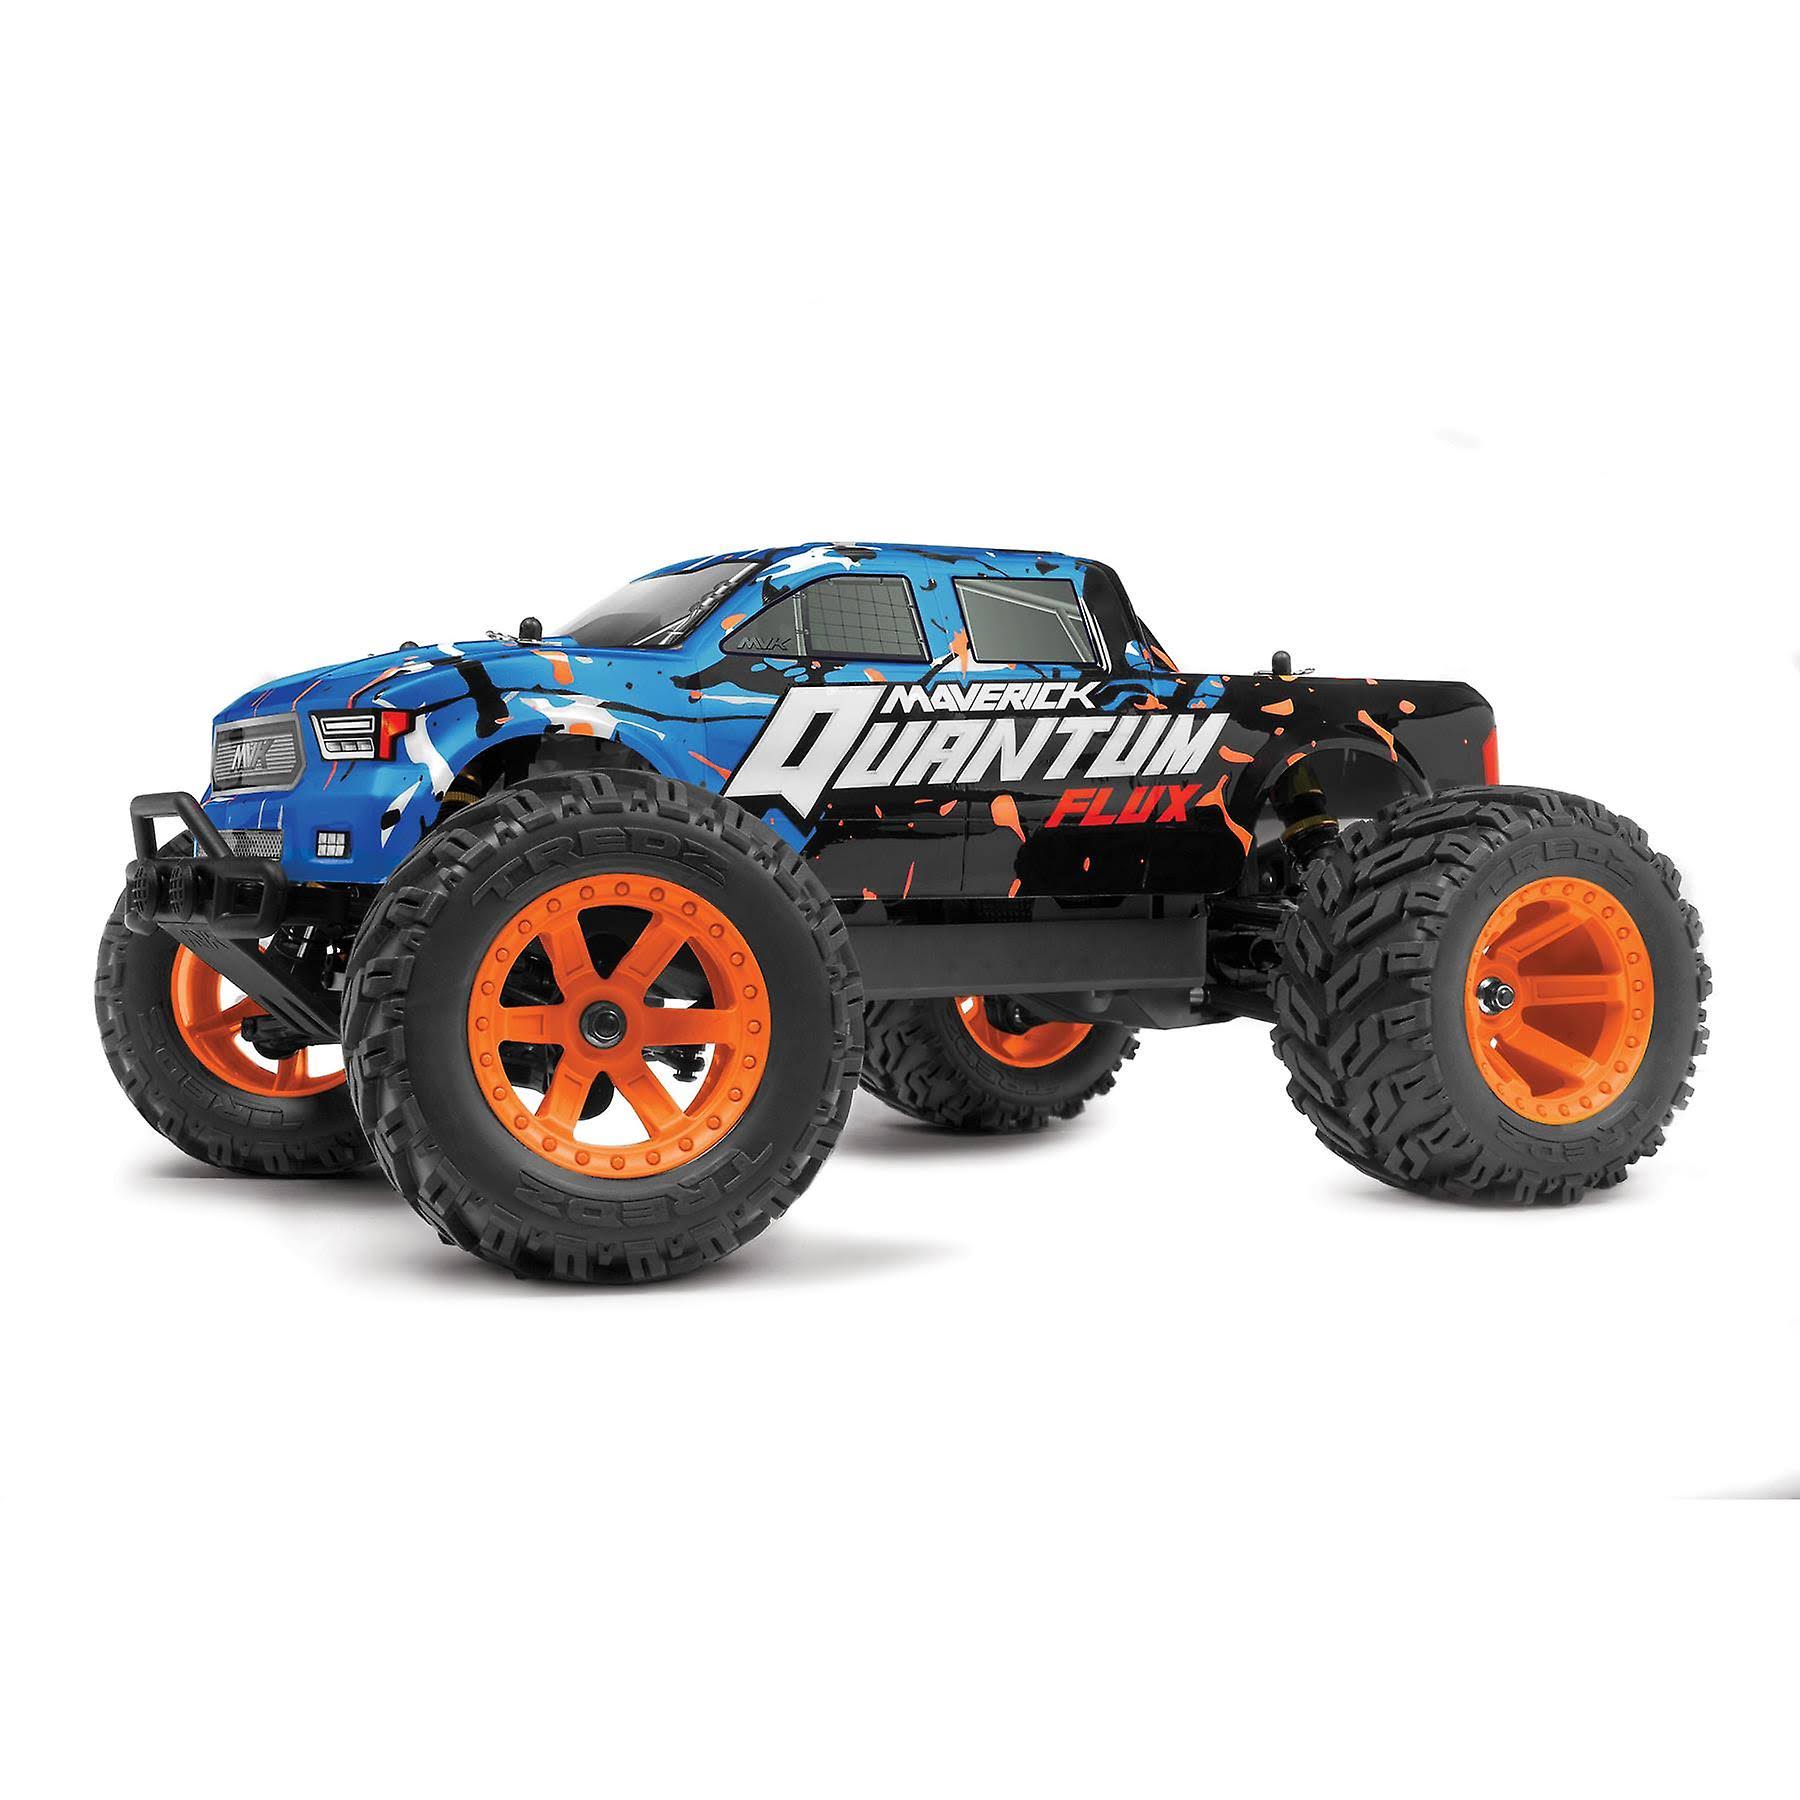 Maverick Quantum MT Flux 80A 1/10 4WD Monster Truck - Blue/Orange